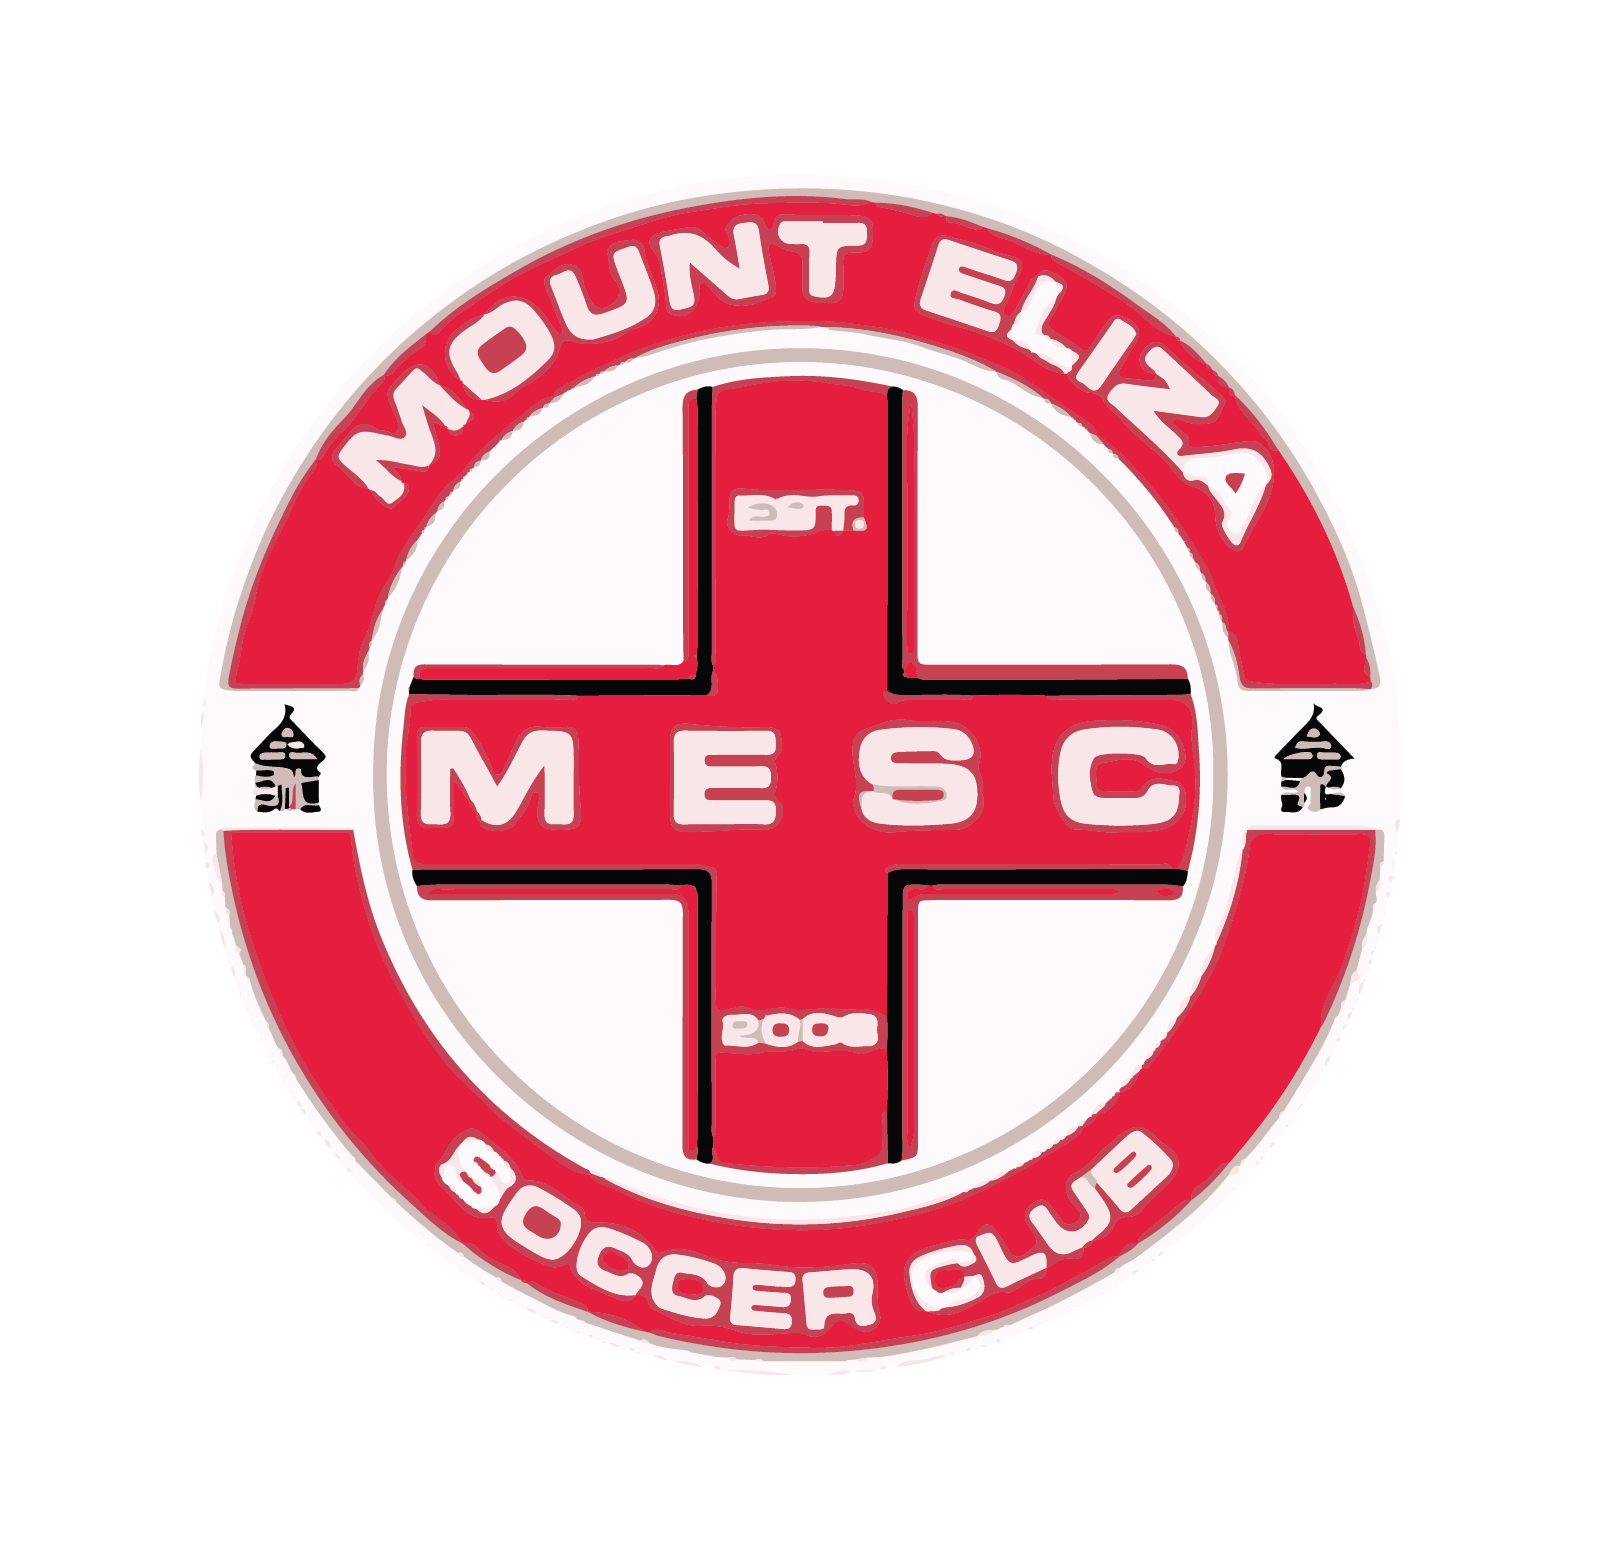 Mount Eliza Soccer Club